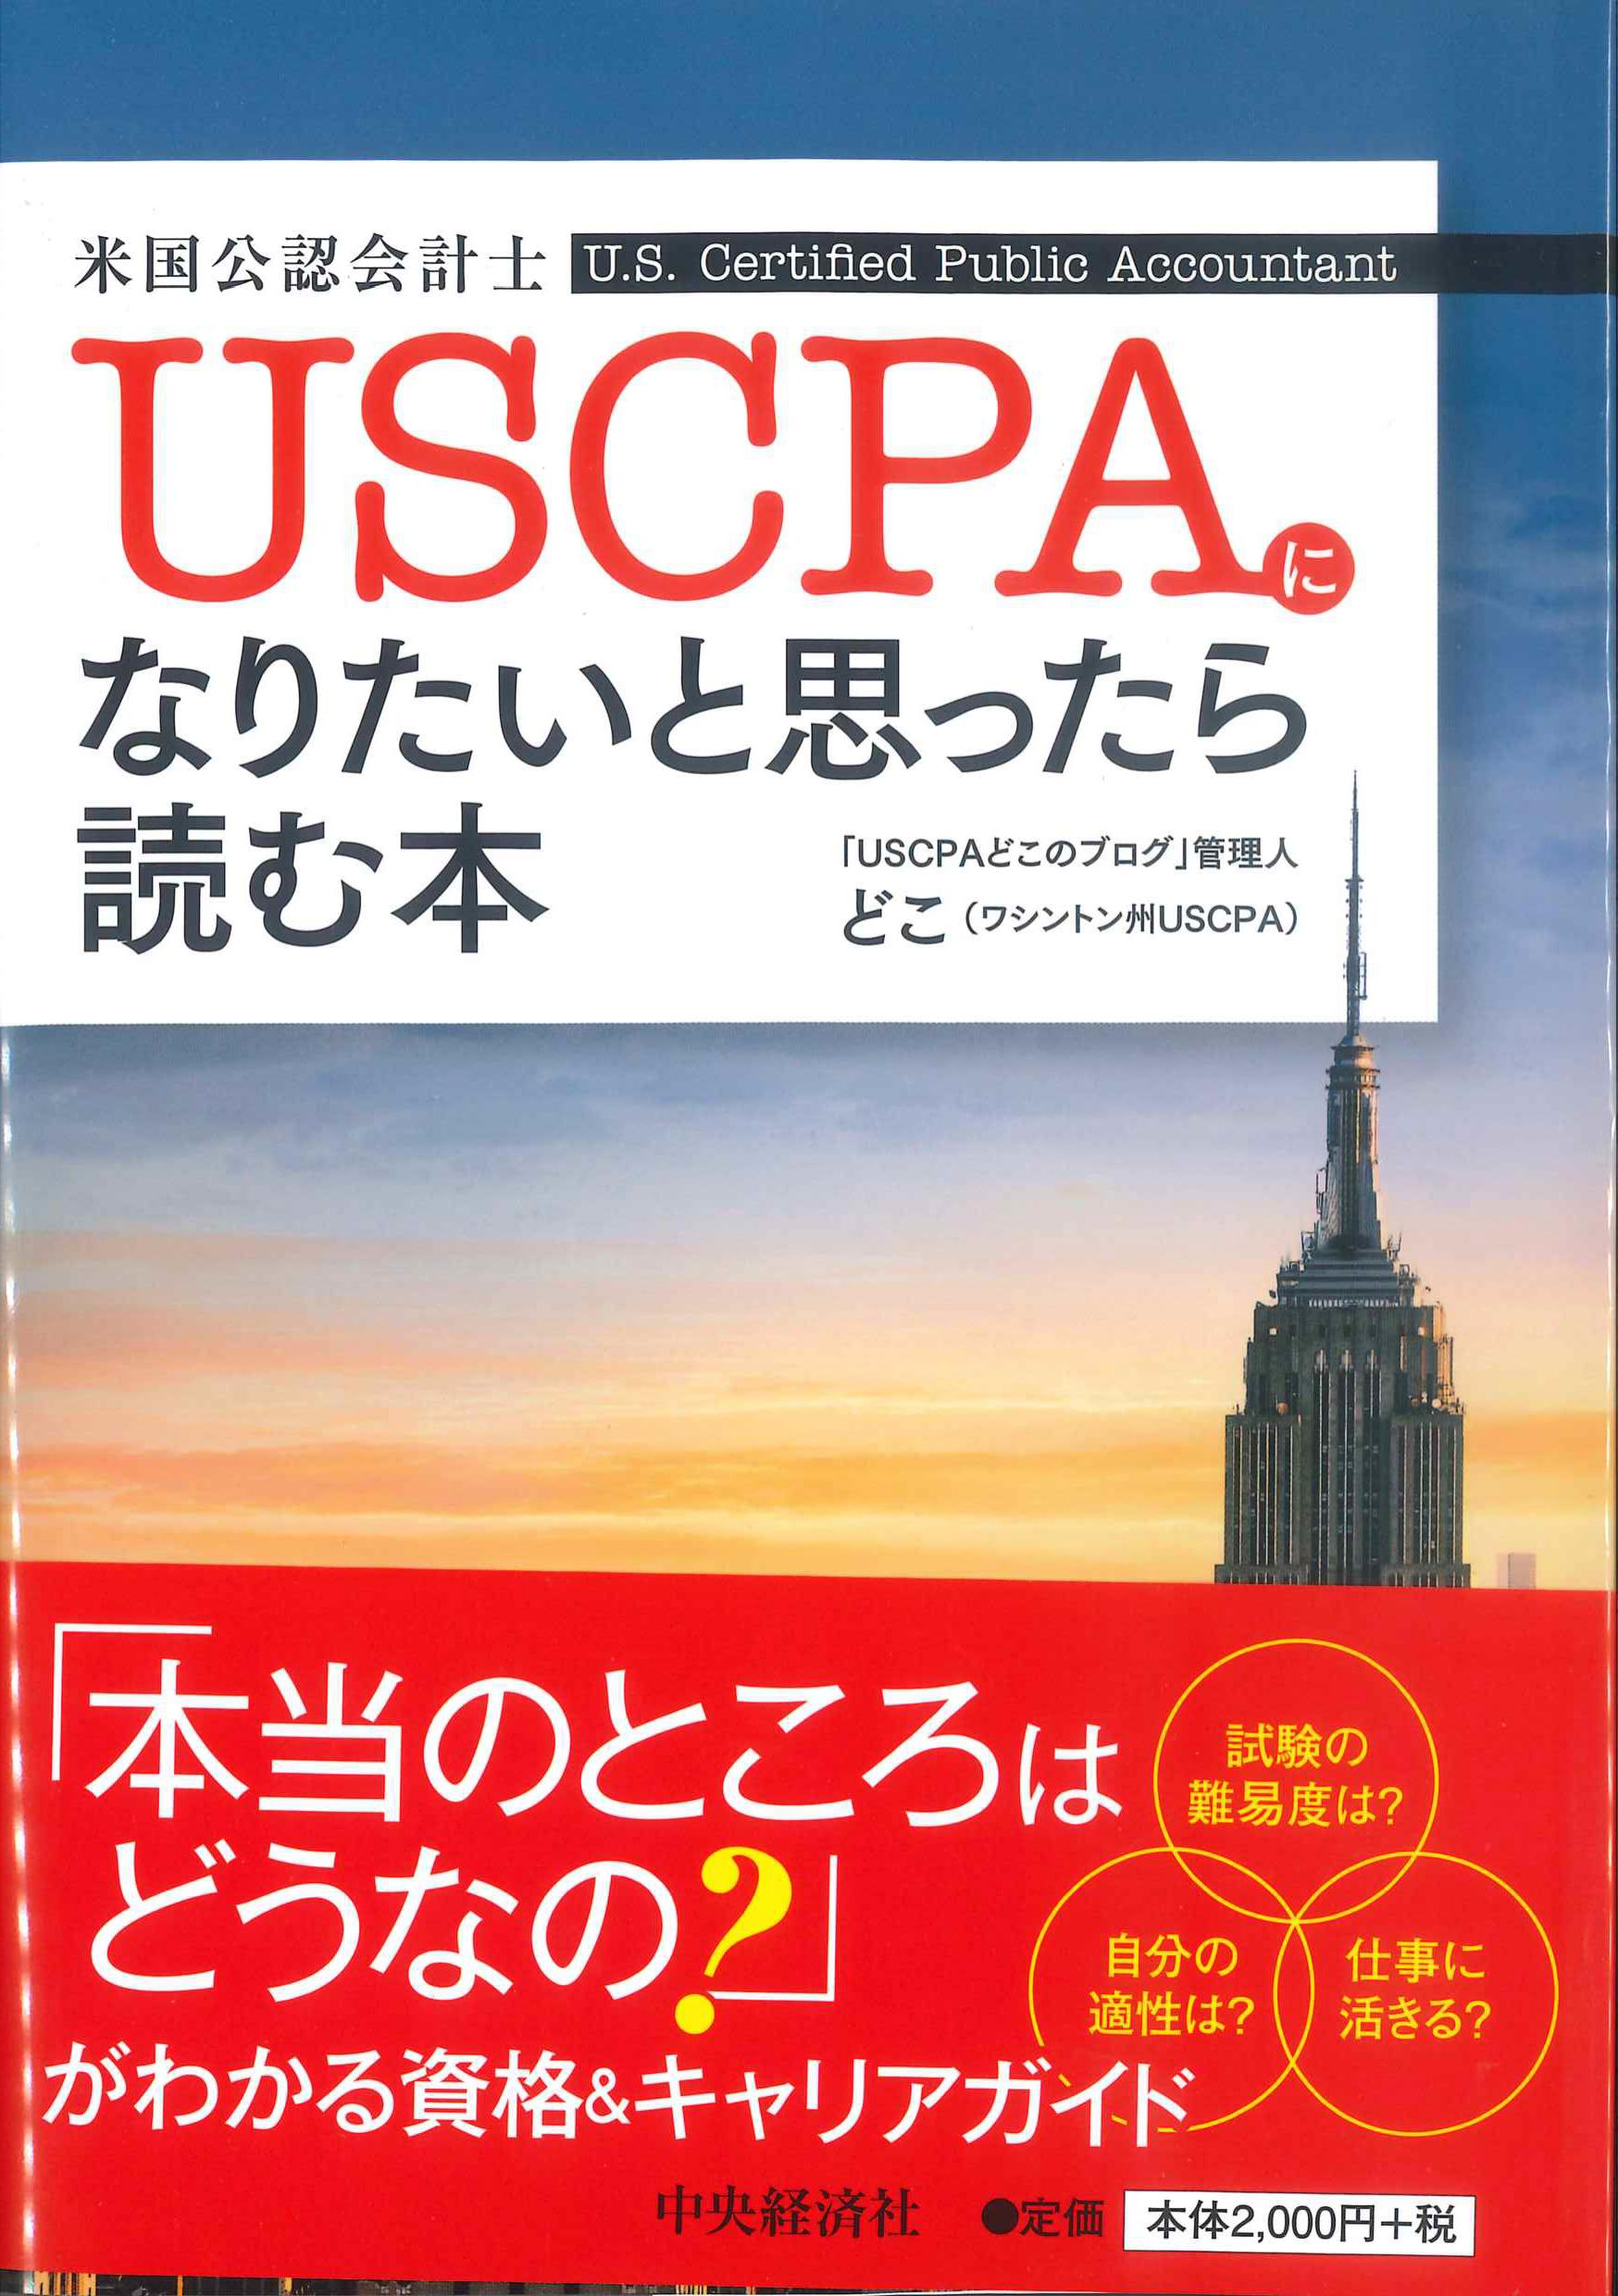 USCPA(米国公認会計士)になりたいと思ったら読む本